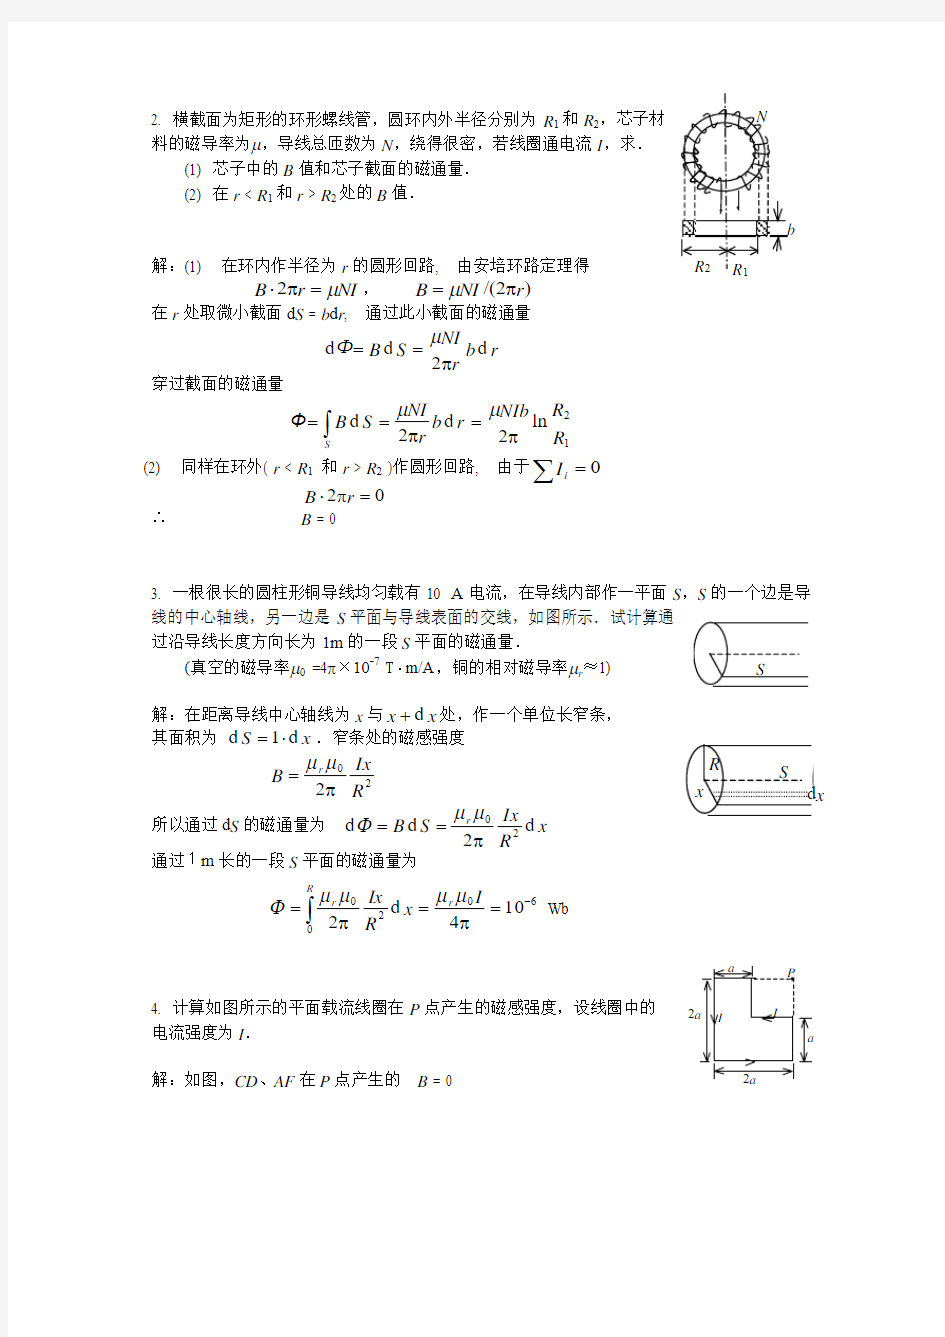 湖南大学物理(2)第14,15章课后习题参考答案